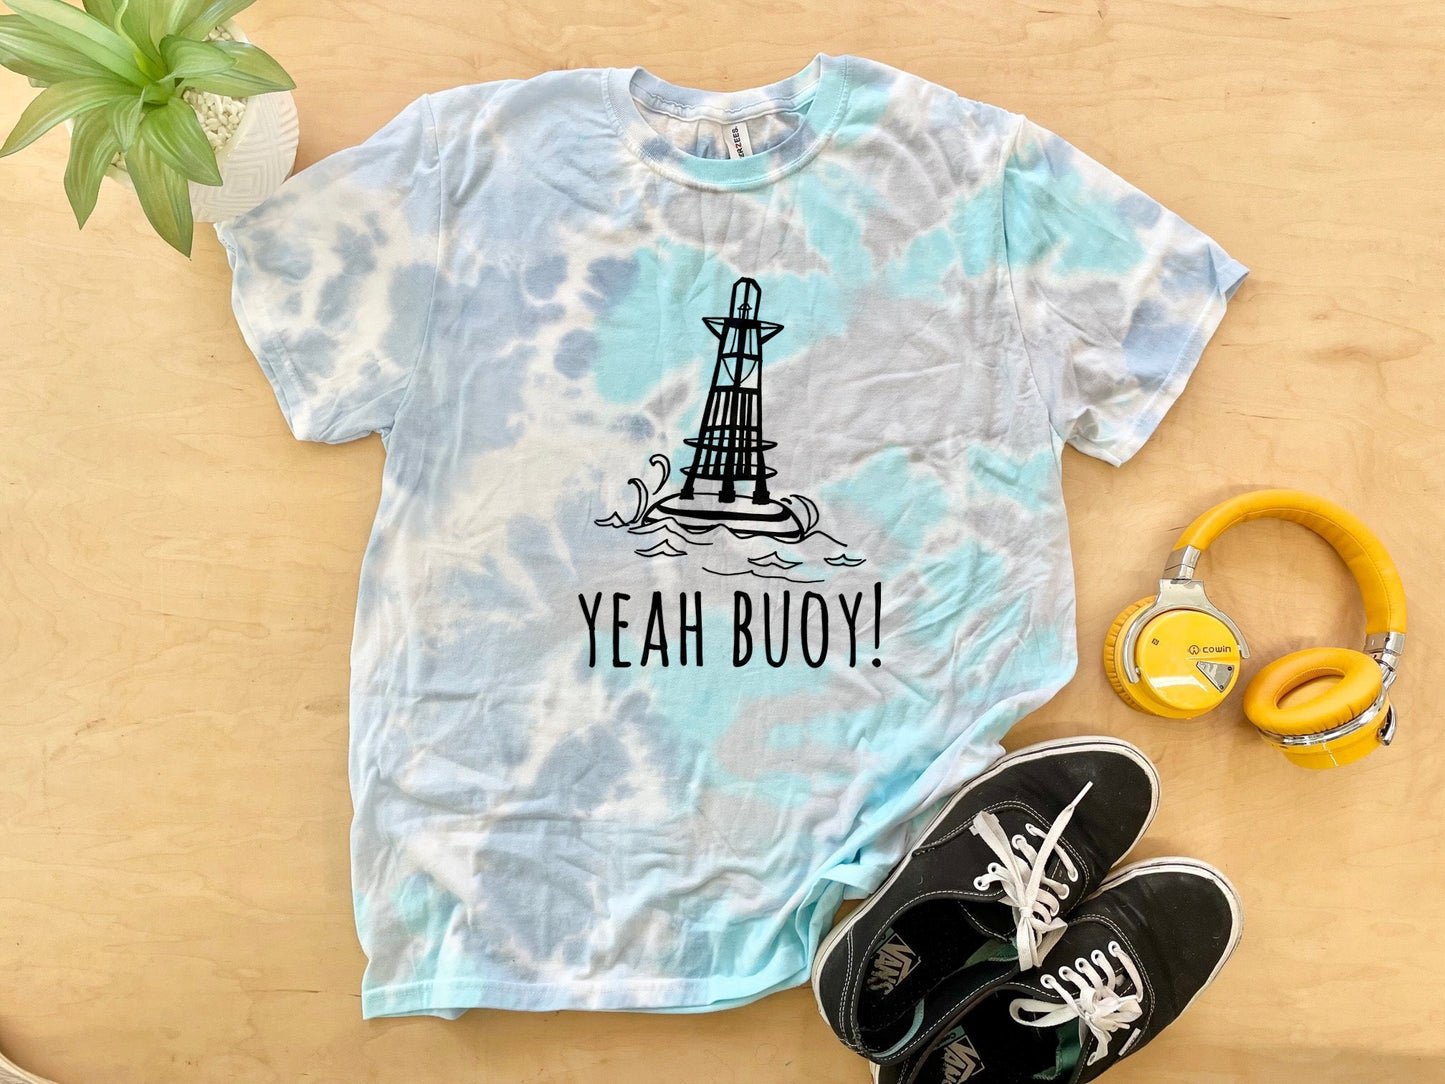 Yeah Buoy! - Mens/Unisex Tie Dye Tee - Blue